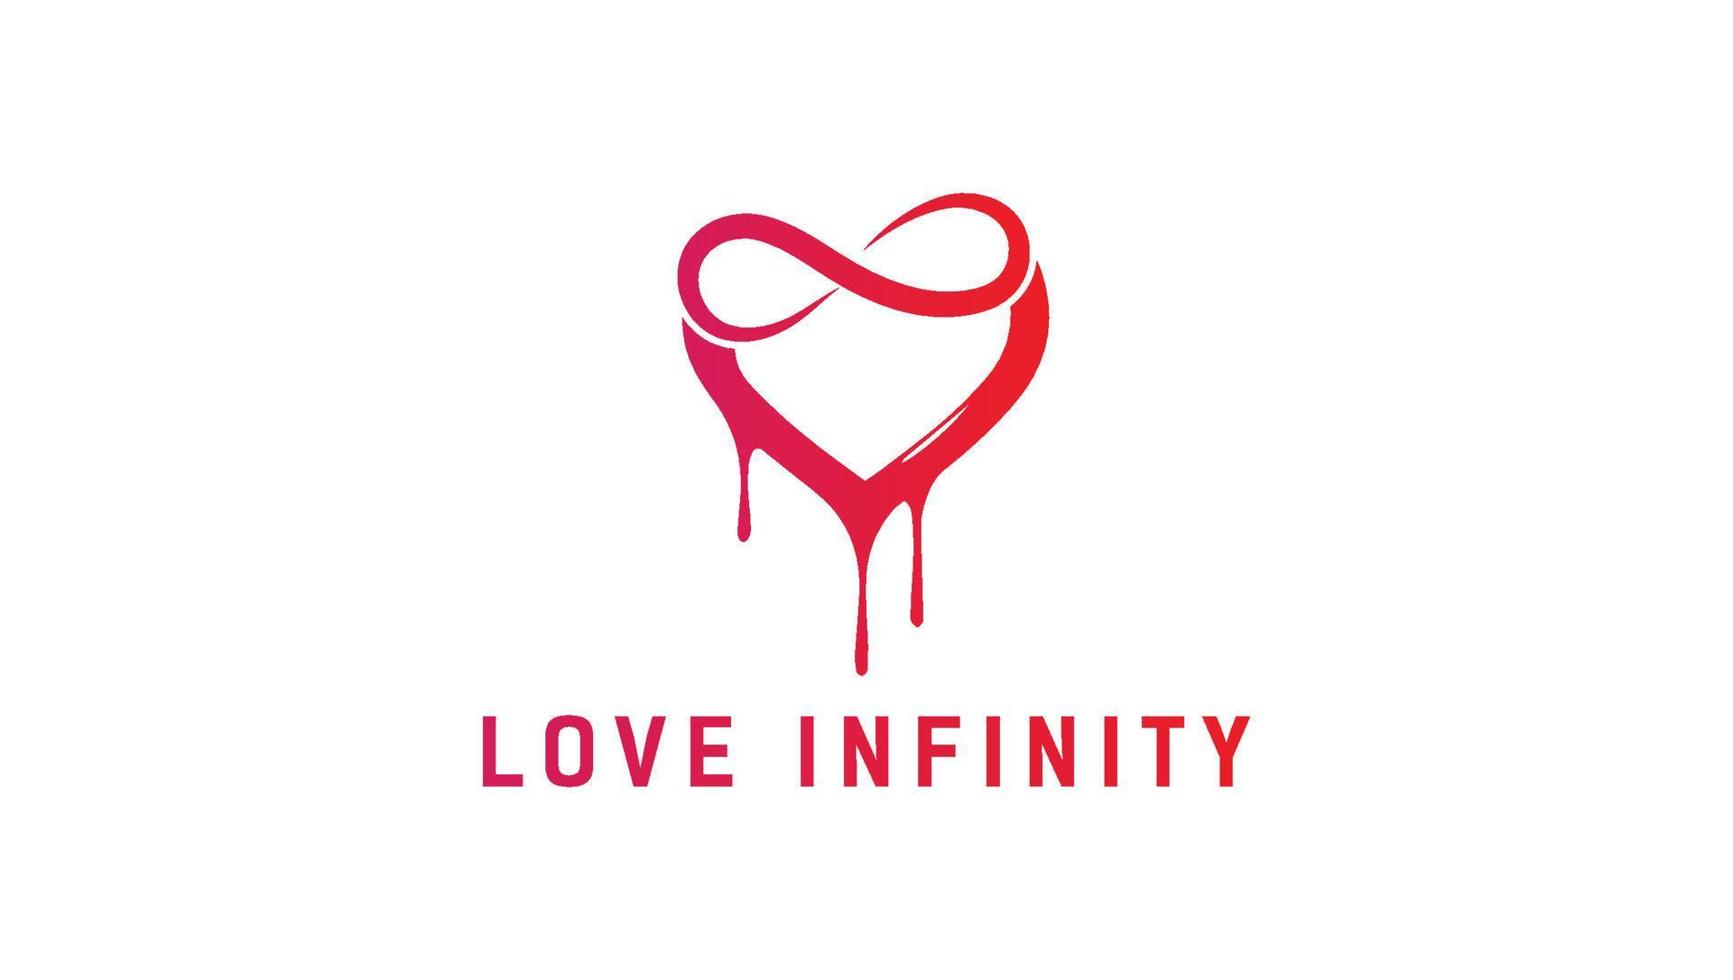 Infintiy Love Heart Dripping Logo Design Template vector